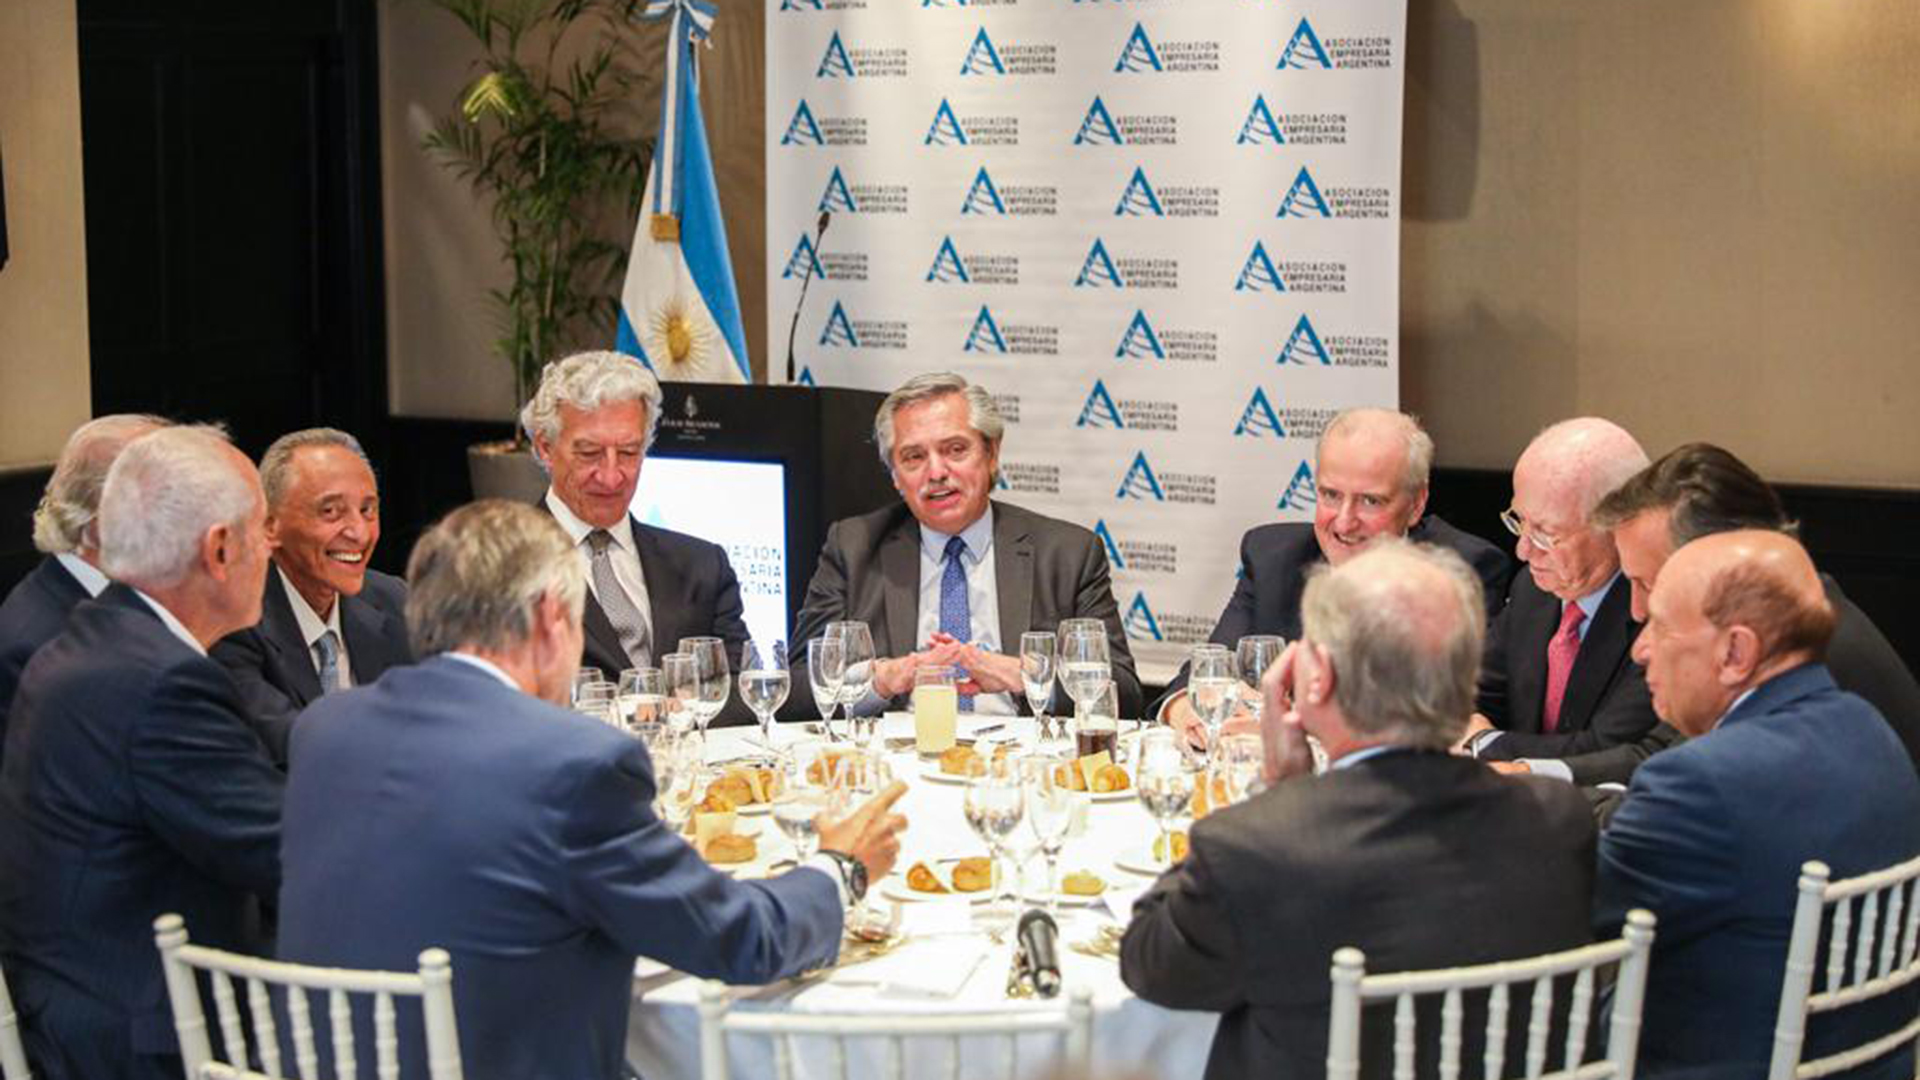 El presidente Alberto Fernández fue invitado al evento de AEA pero aún no confirmó su presencia